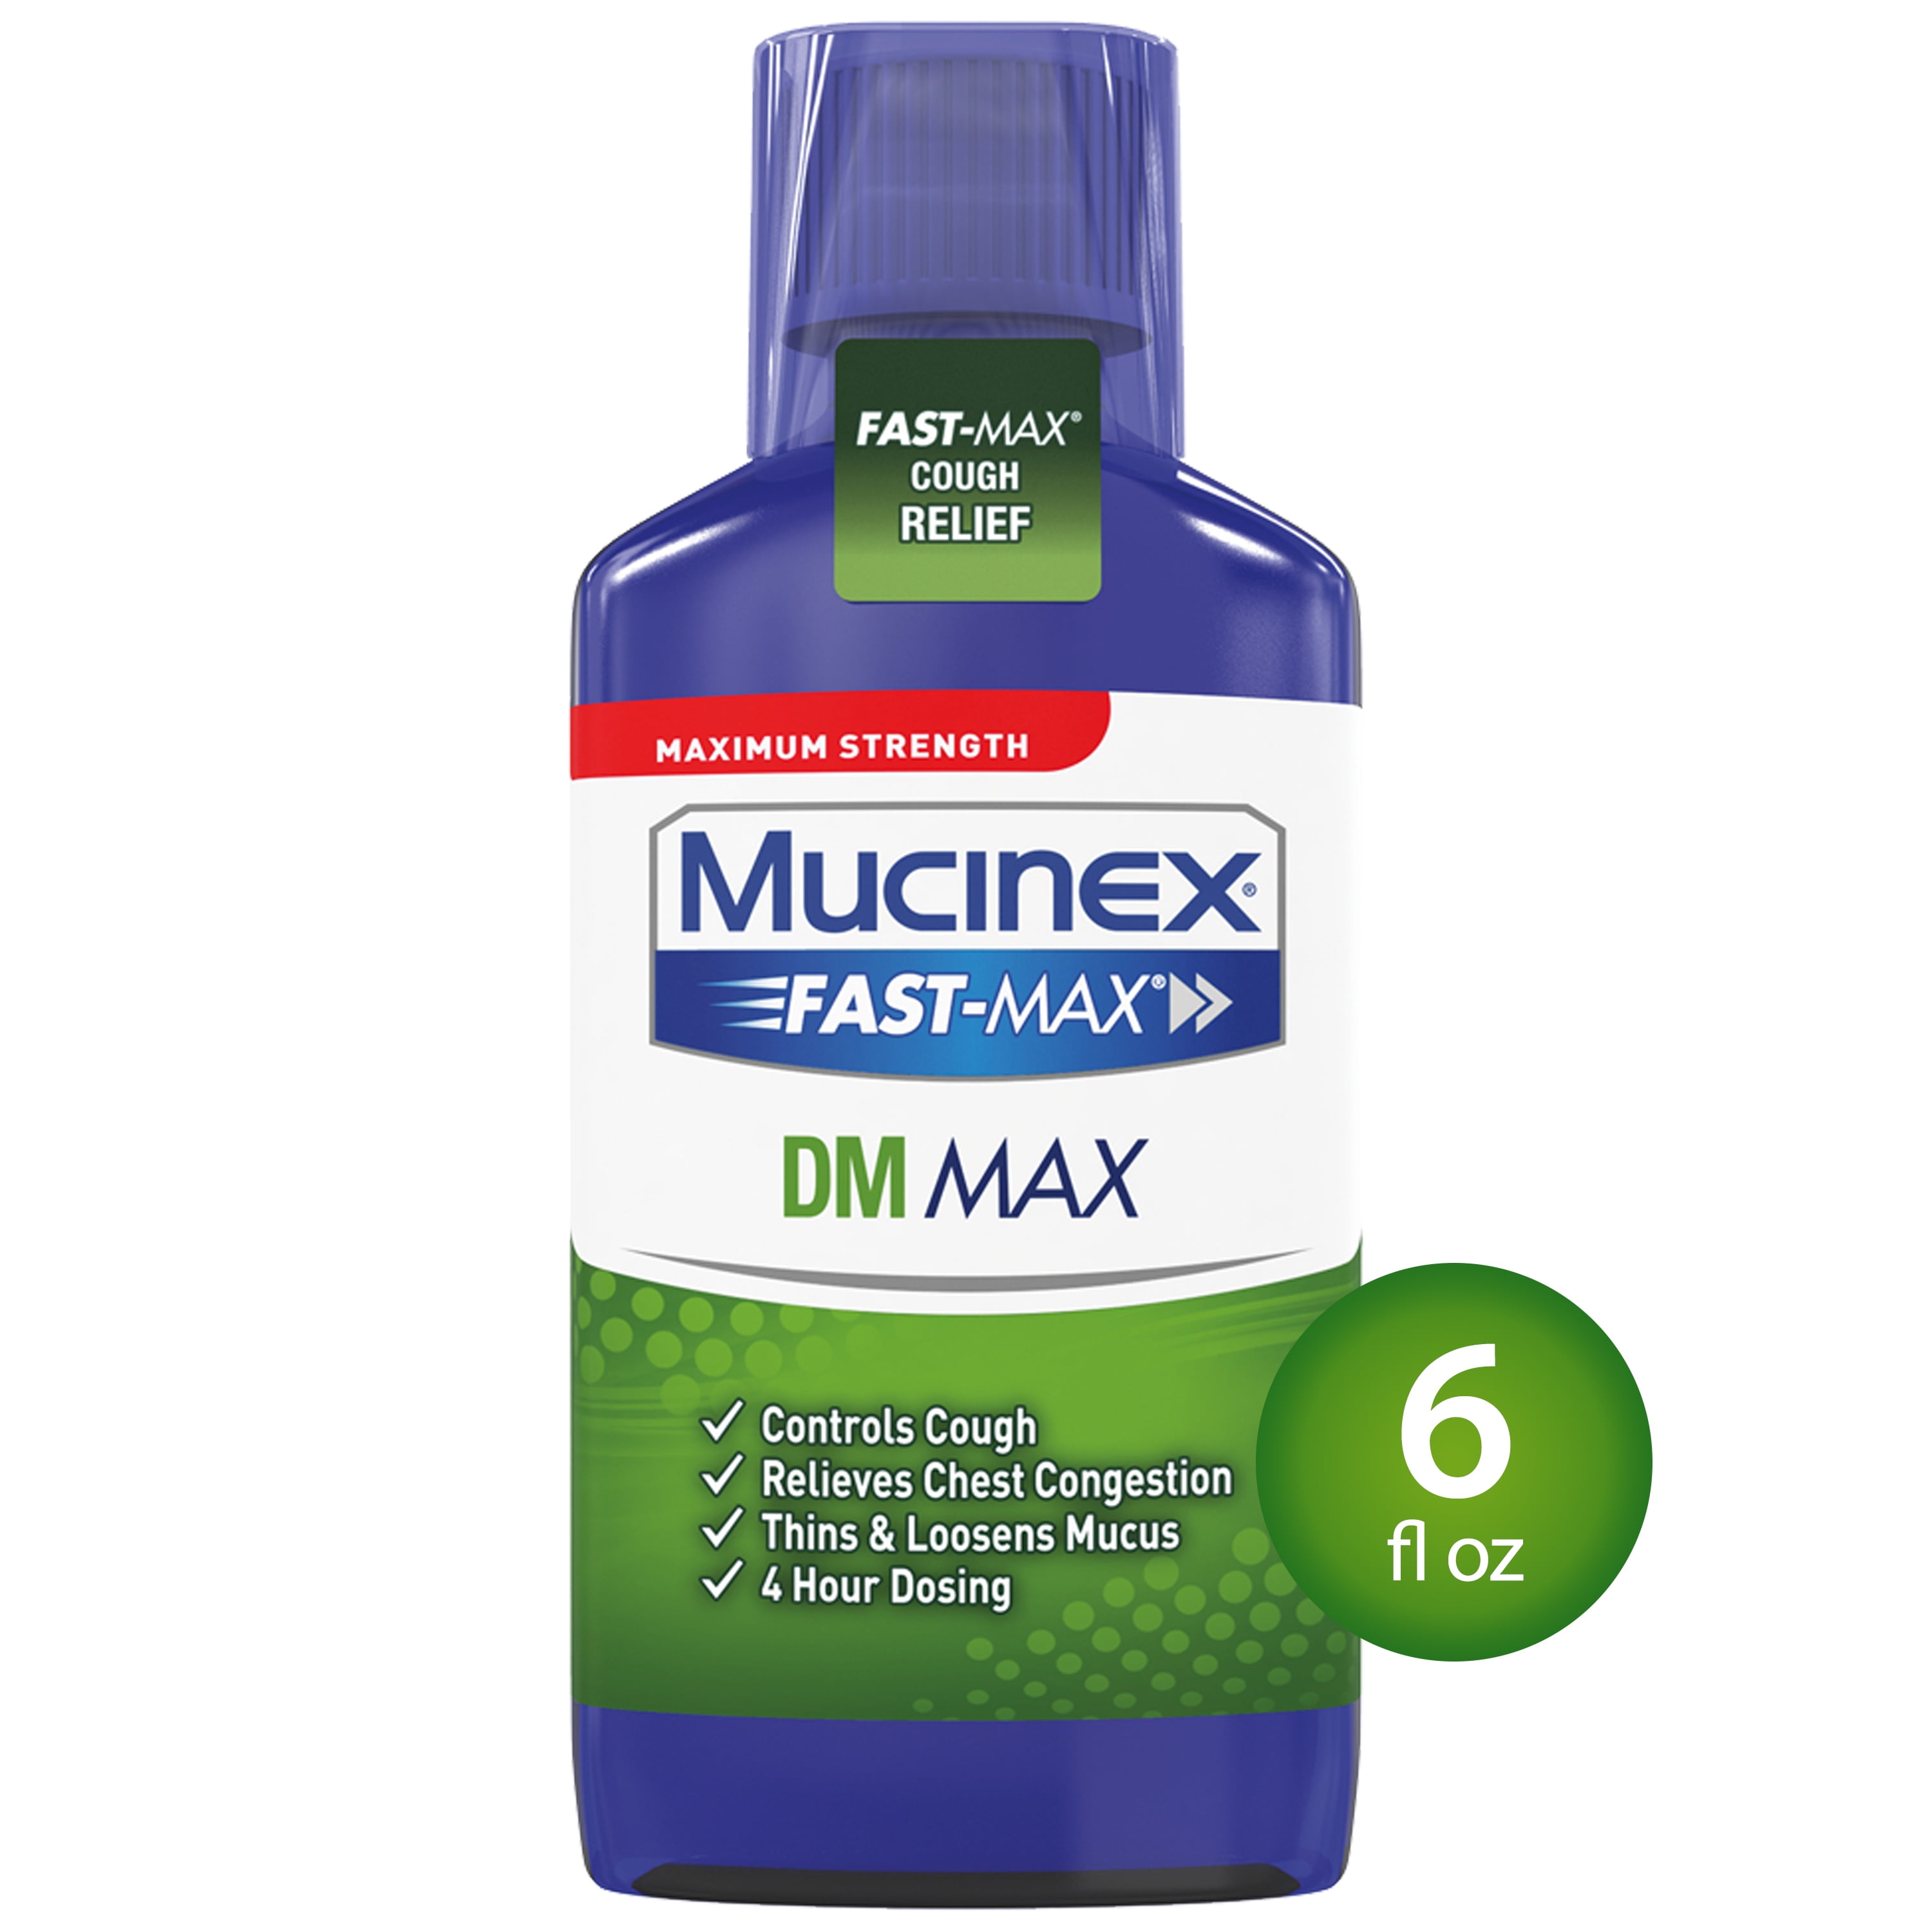 Mucinex Fast-Max DM Maximum Strength Cough Suppressant and Expectorant Liquid - 6 fl oz ...